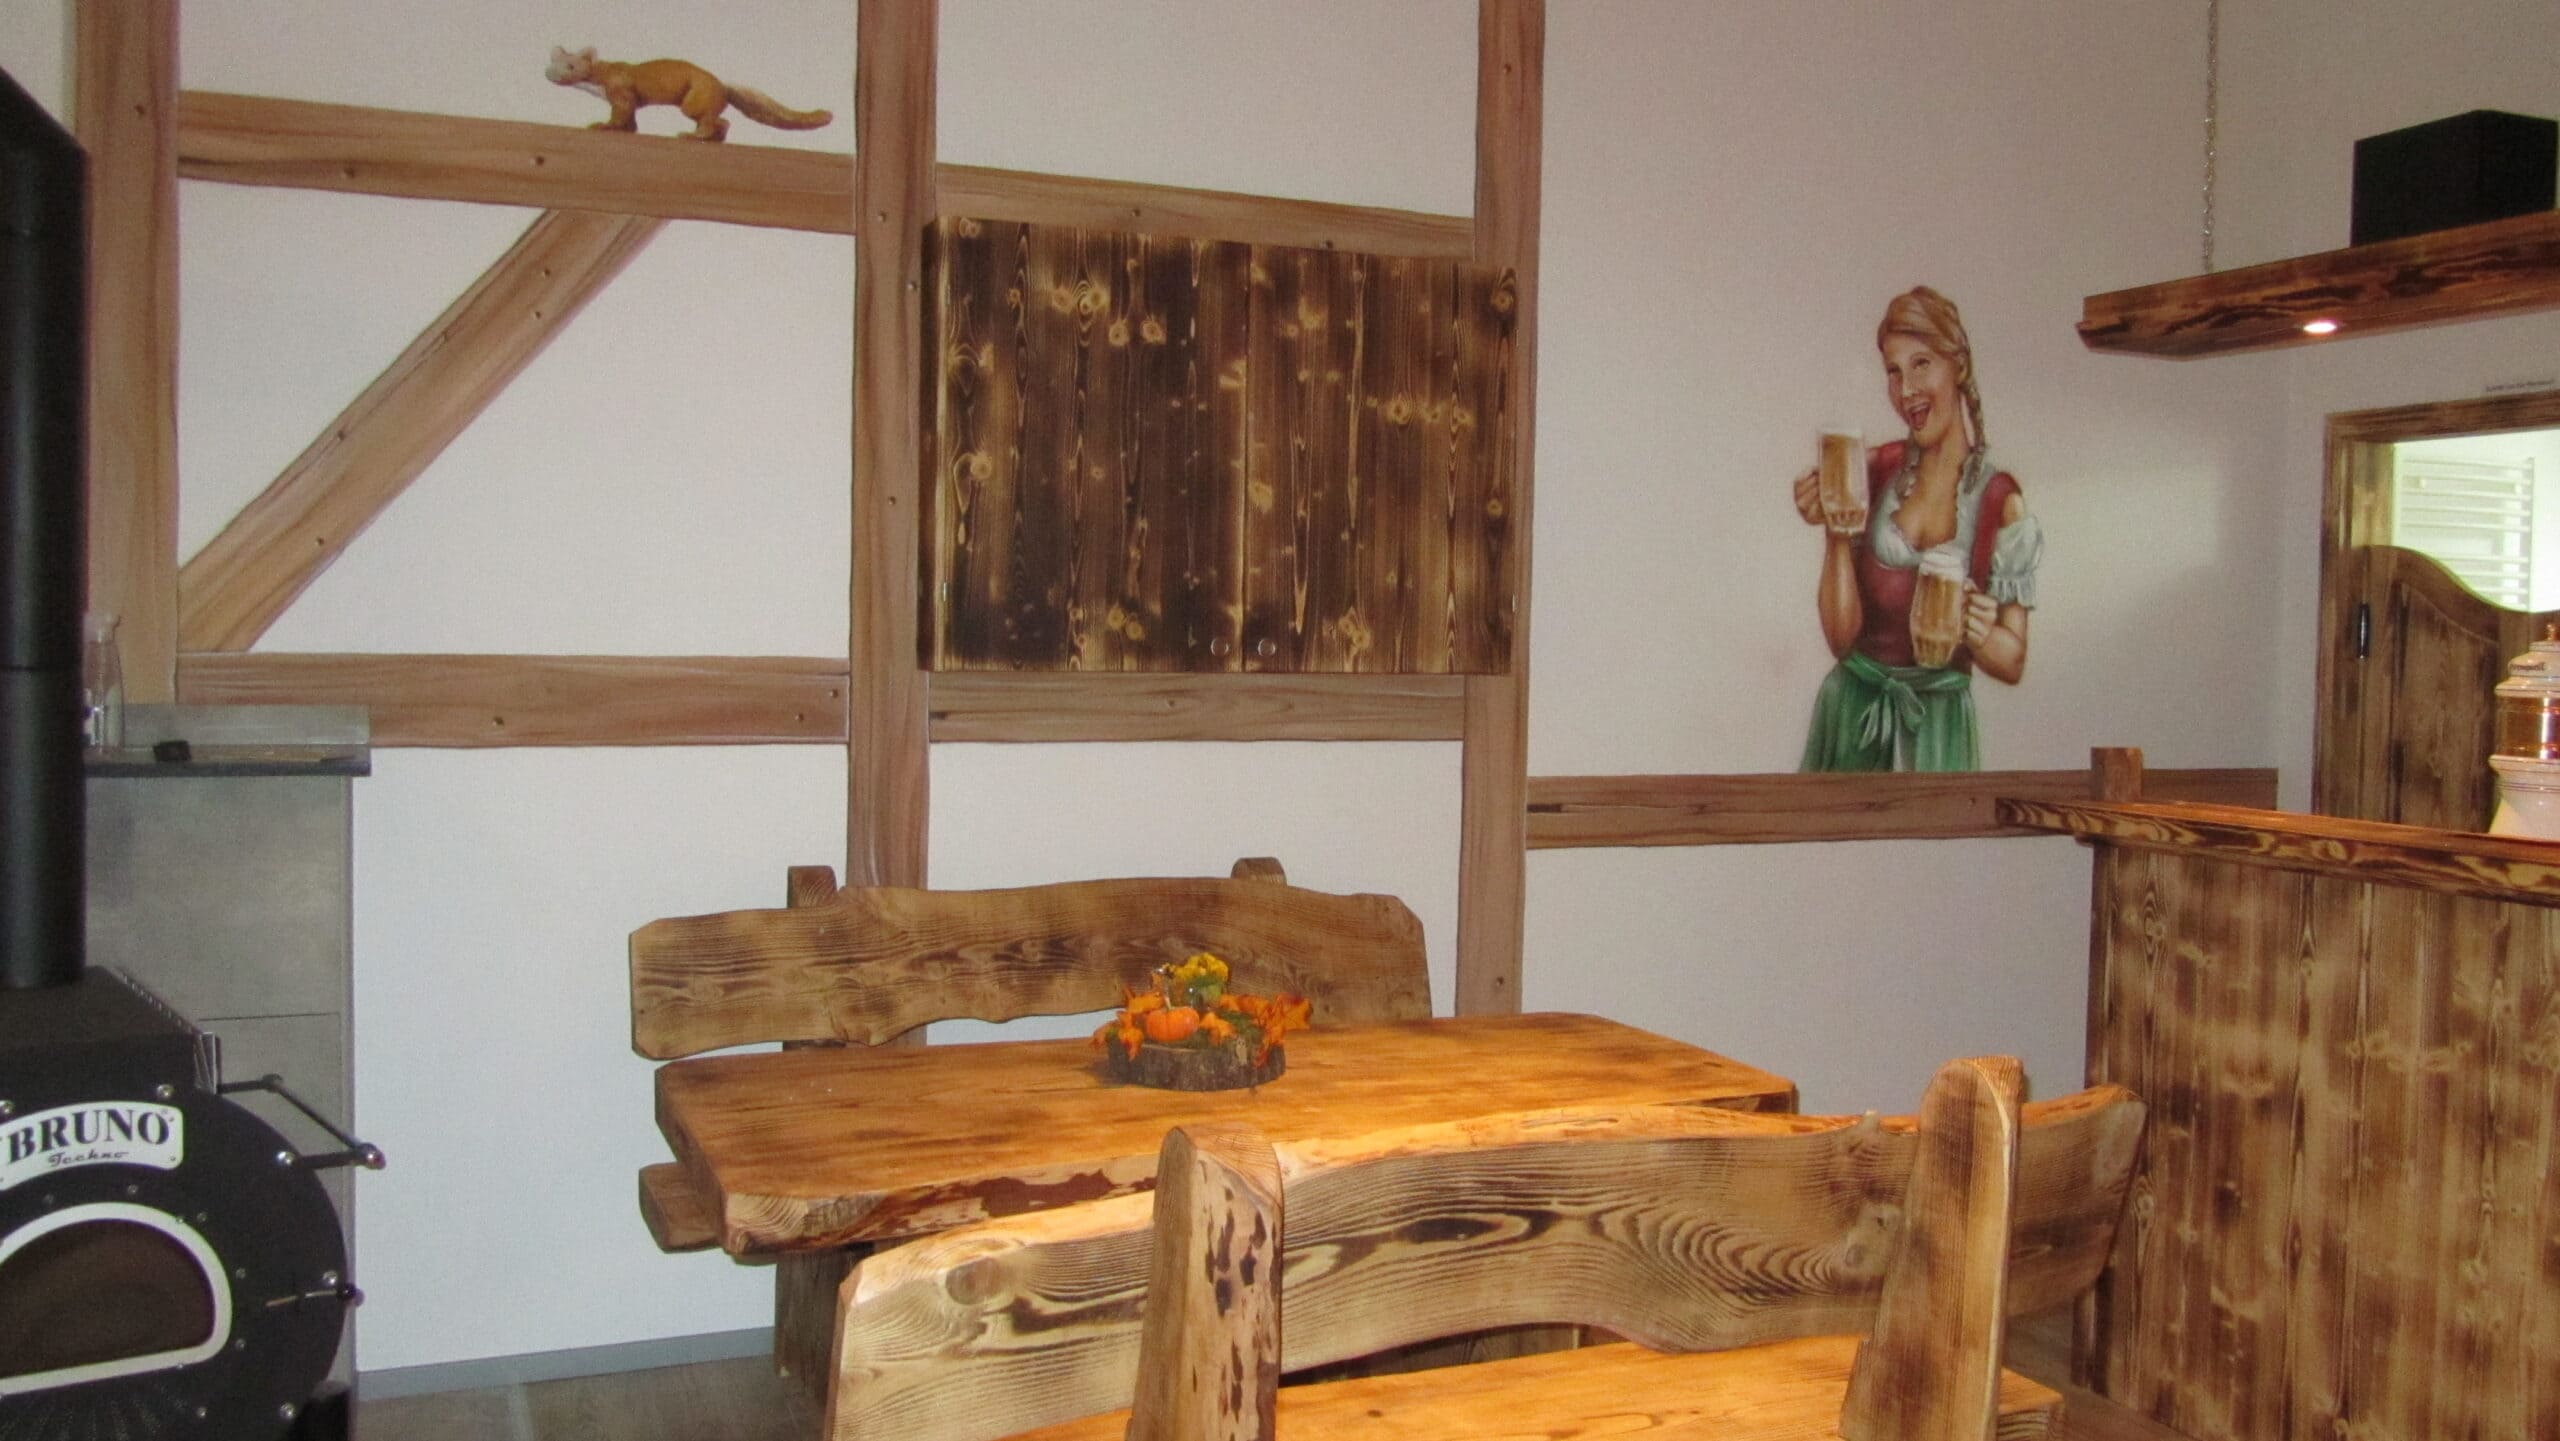 Bild eines Holztischs mit Holzbänken und Wandmalerei im Hintergrund